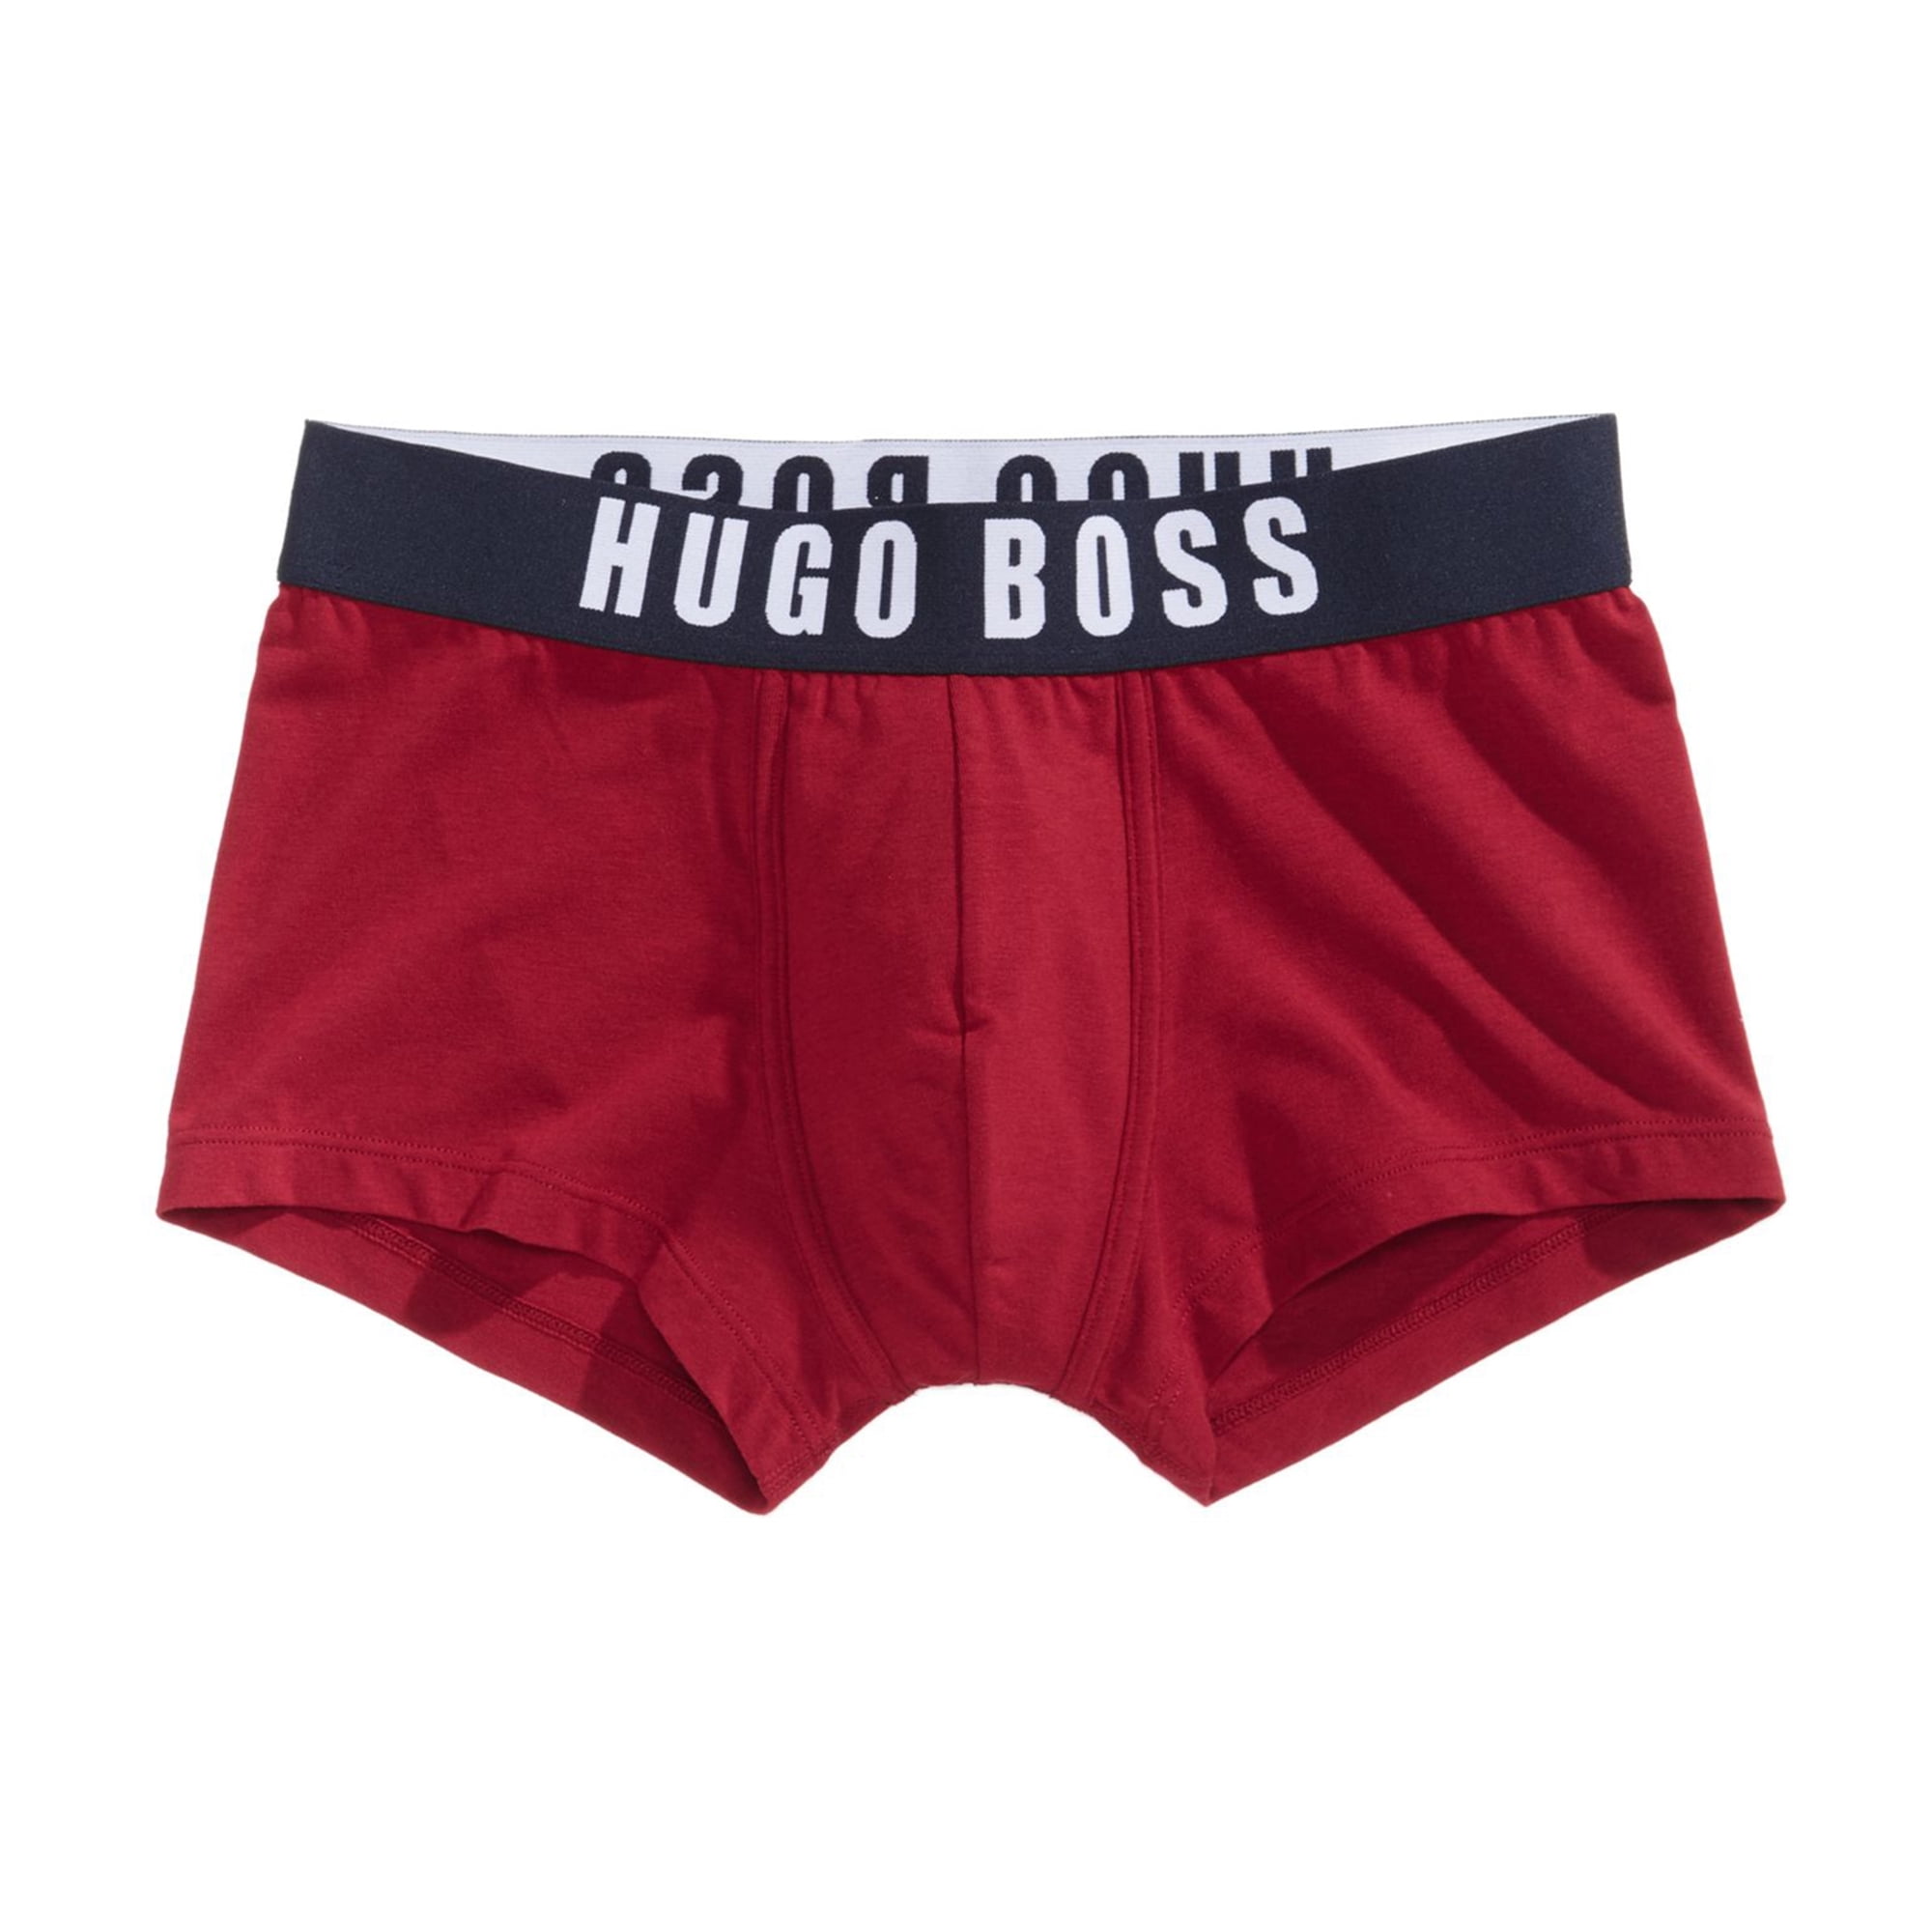 Hugo Boss - Hugo Boss Mens Identity Underwear Boxer Briefs, Red, Medium ...